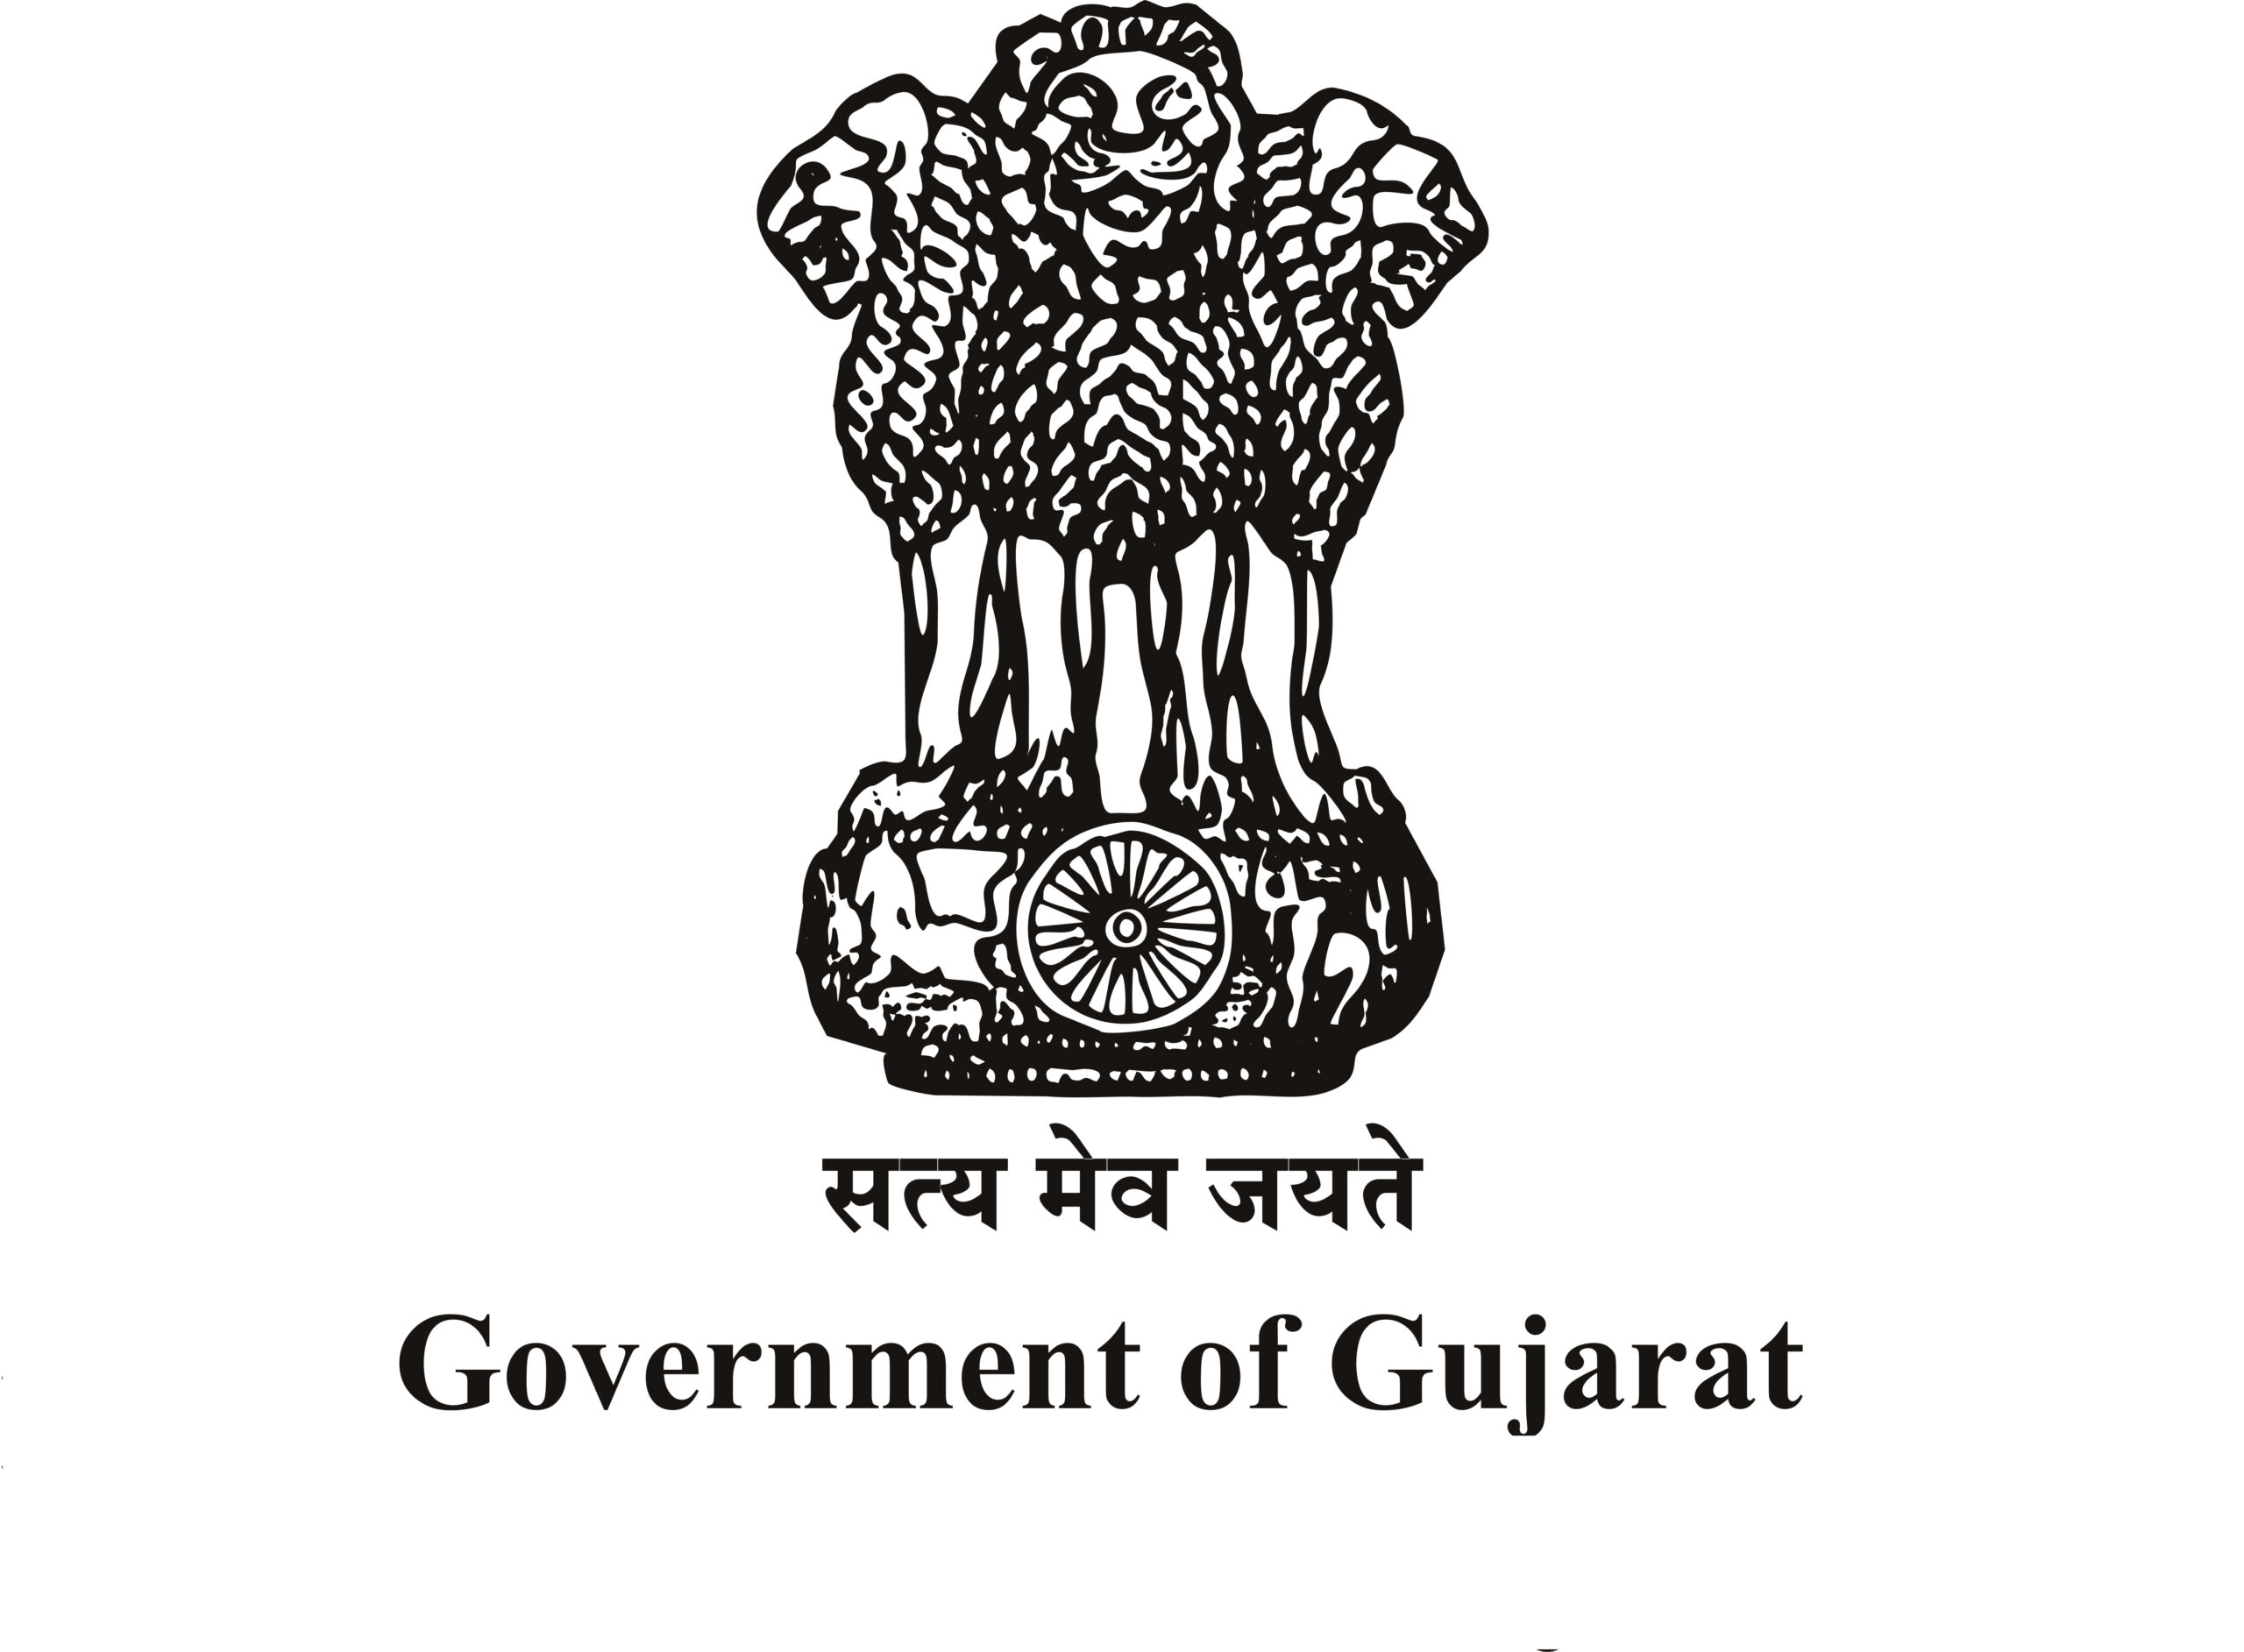 https://sgcci.in/wp-content/uploads/2023/05/Govt-of-Gujarat-Emblem-scaled.jpg